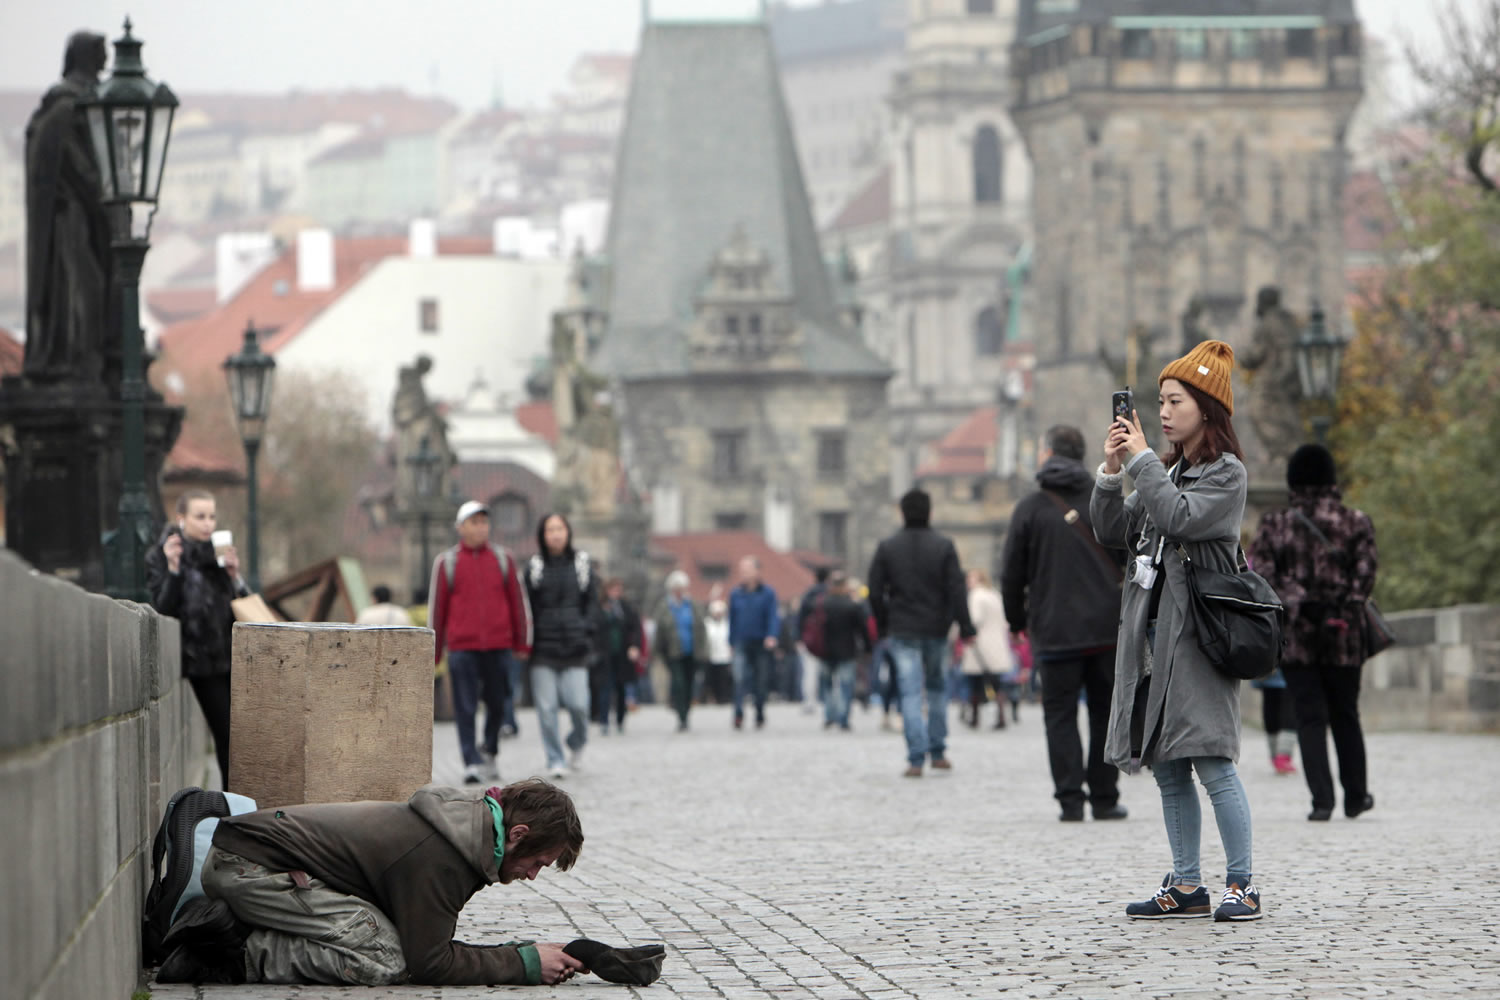 Los mendigos darán WiFi en Praga